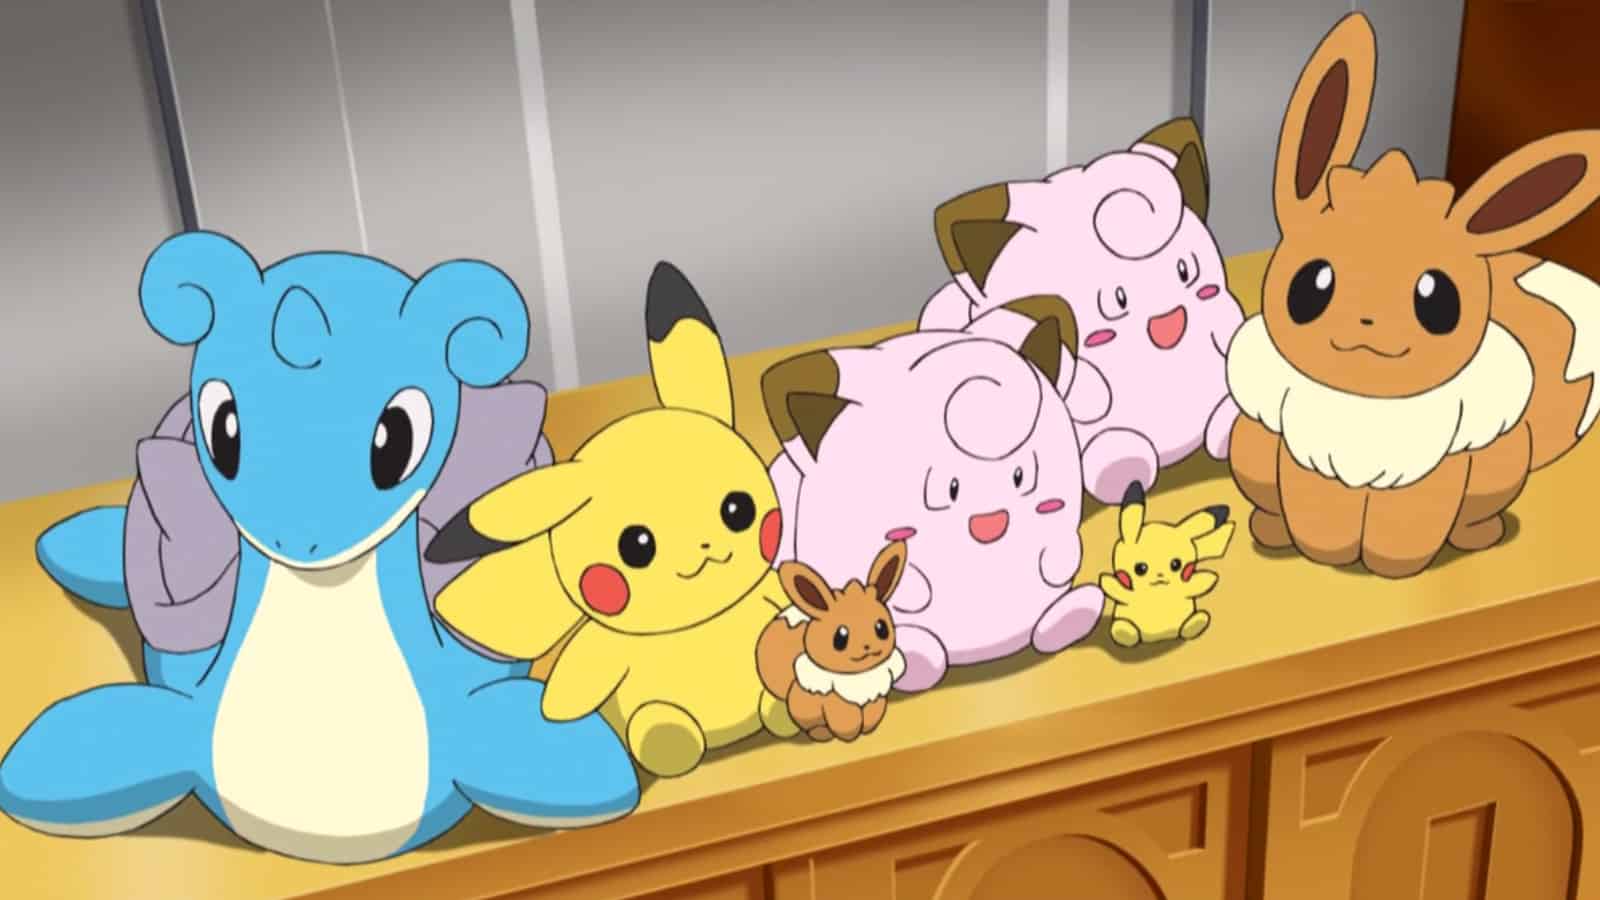 Pokemon Plushies in the Pokemon Anime